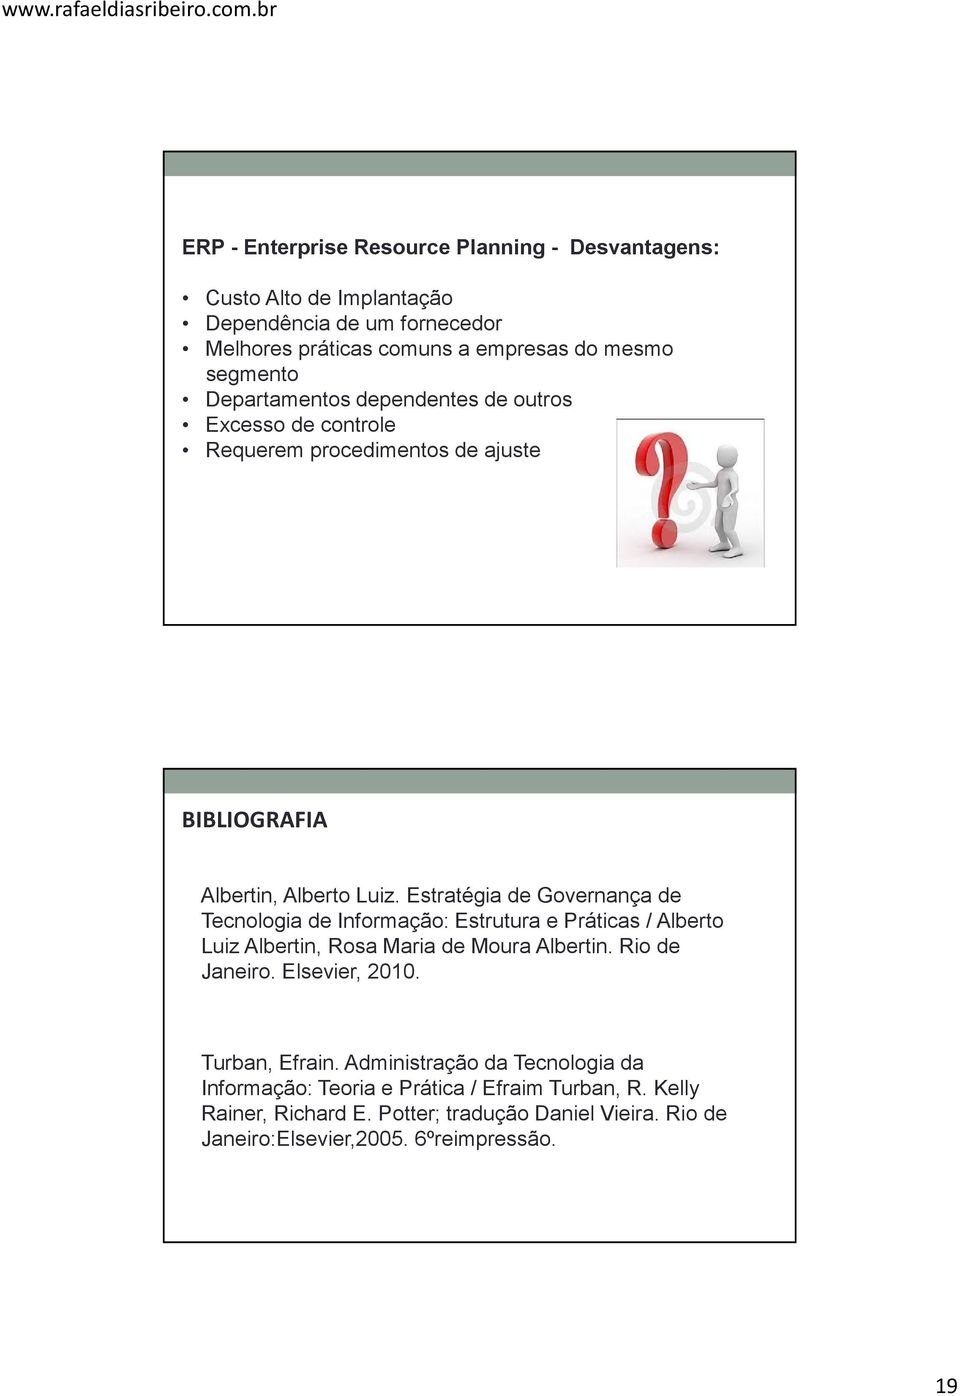 Estratégia de Governança de Tecnologia de Informação: Estrutura e Práticas / Alberto Luiz Albertin, Rosa Maria de Moura Albertin. Rio de Janeiro. Elsevier, 2010.